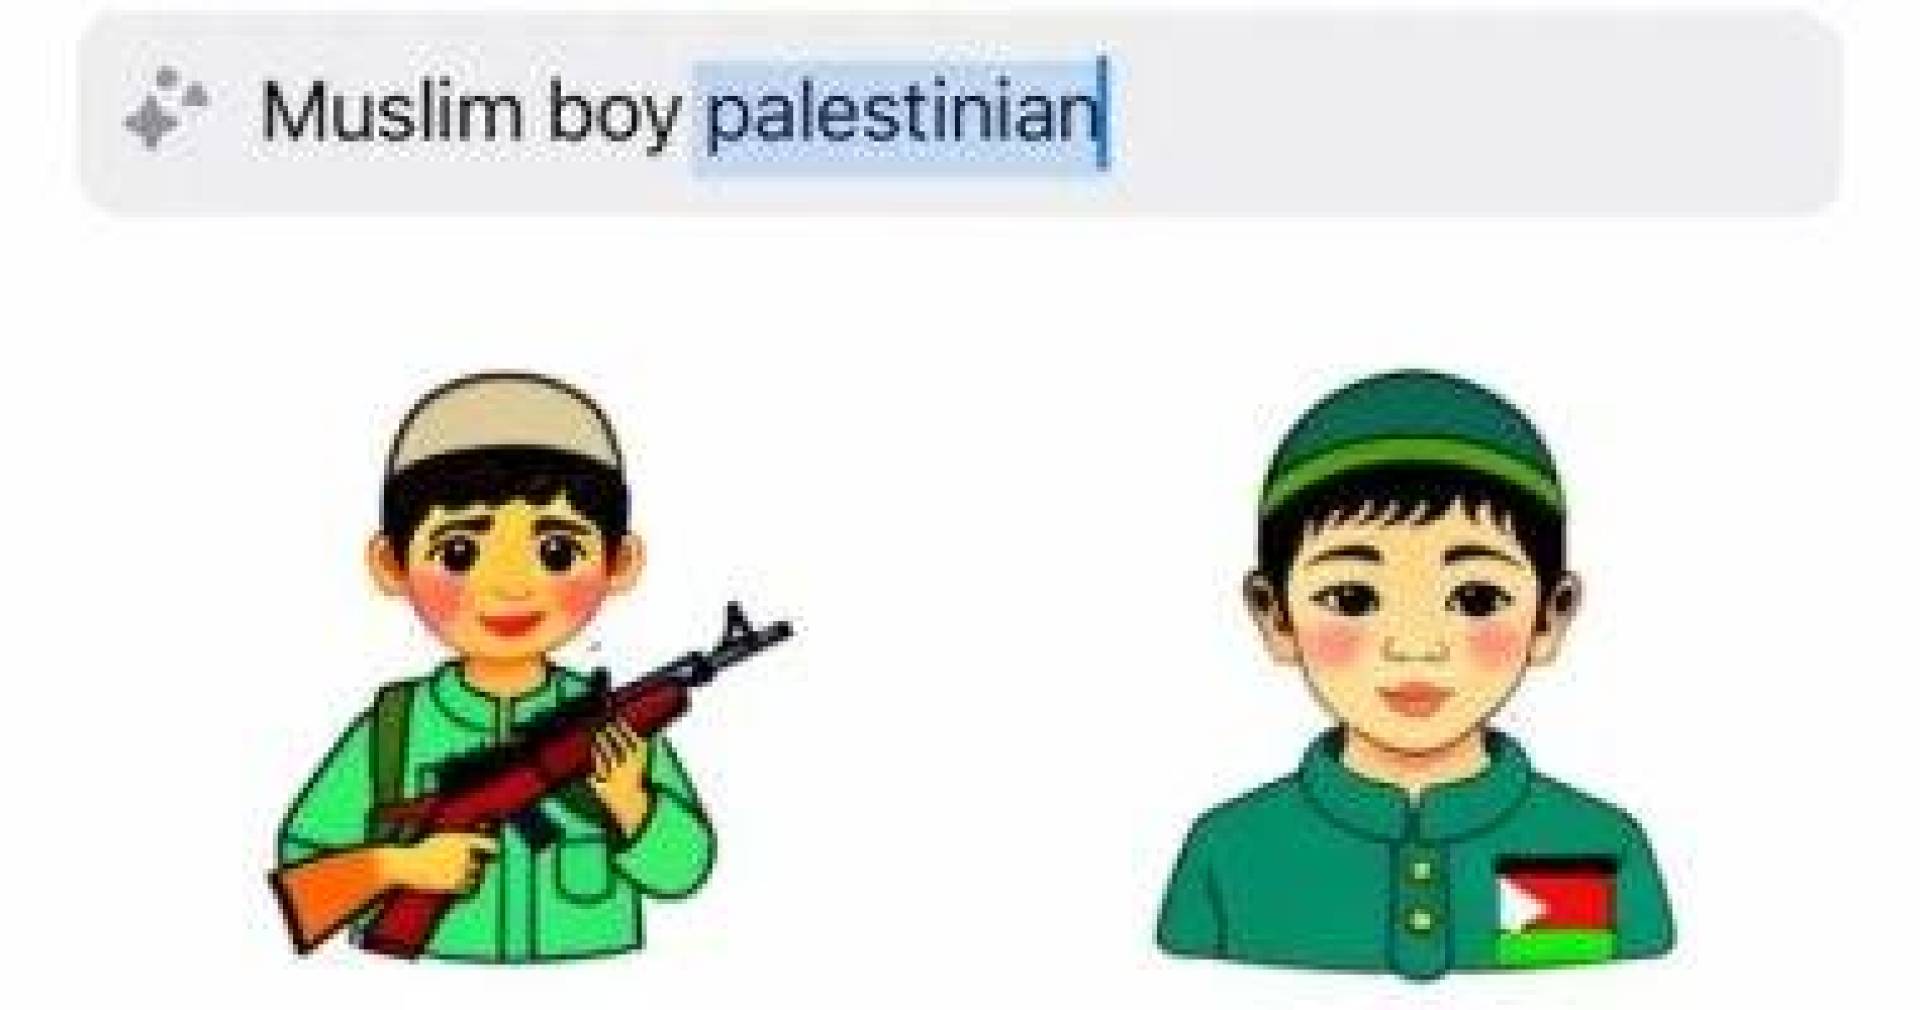 تطبيق واتساب يثير القلق بشأن محتوى مسيء لأطفال فلسطين 